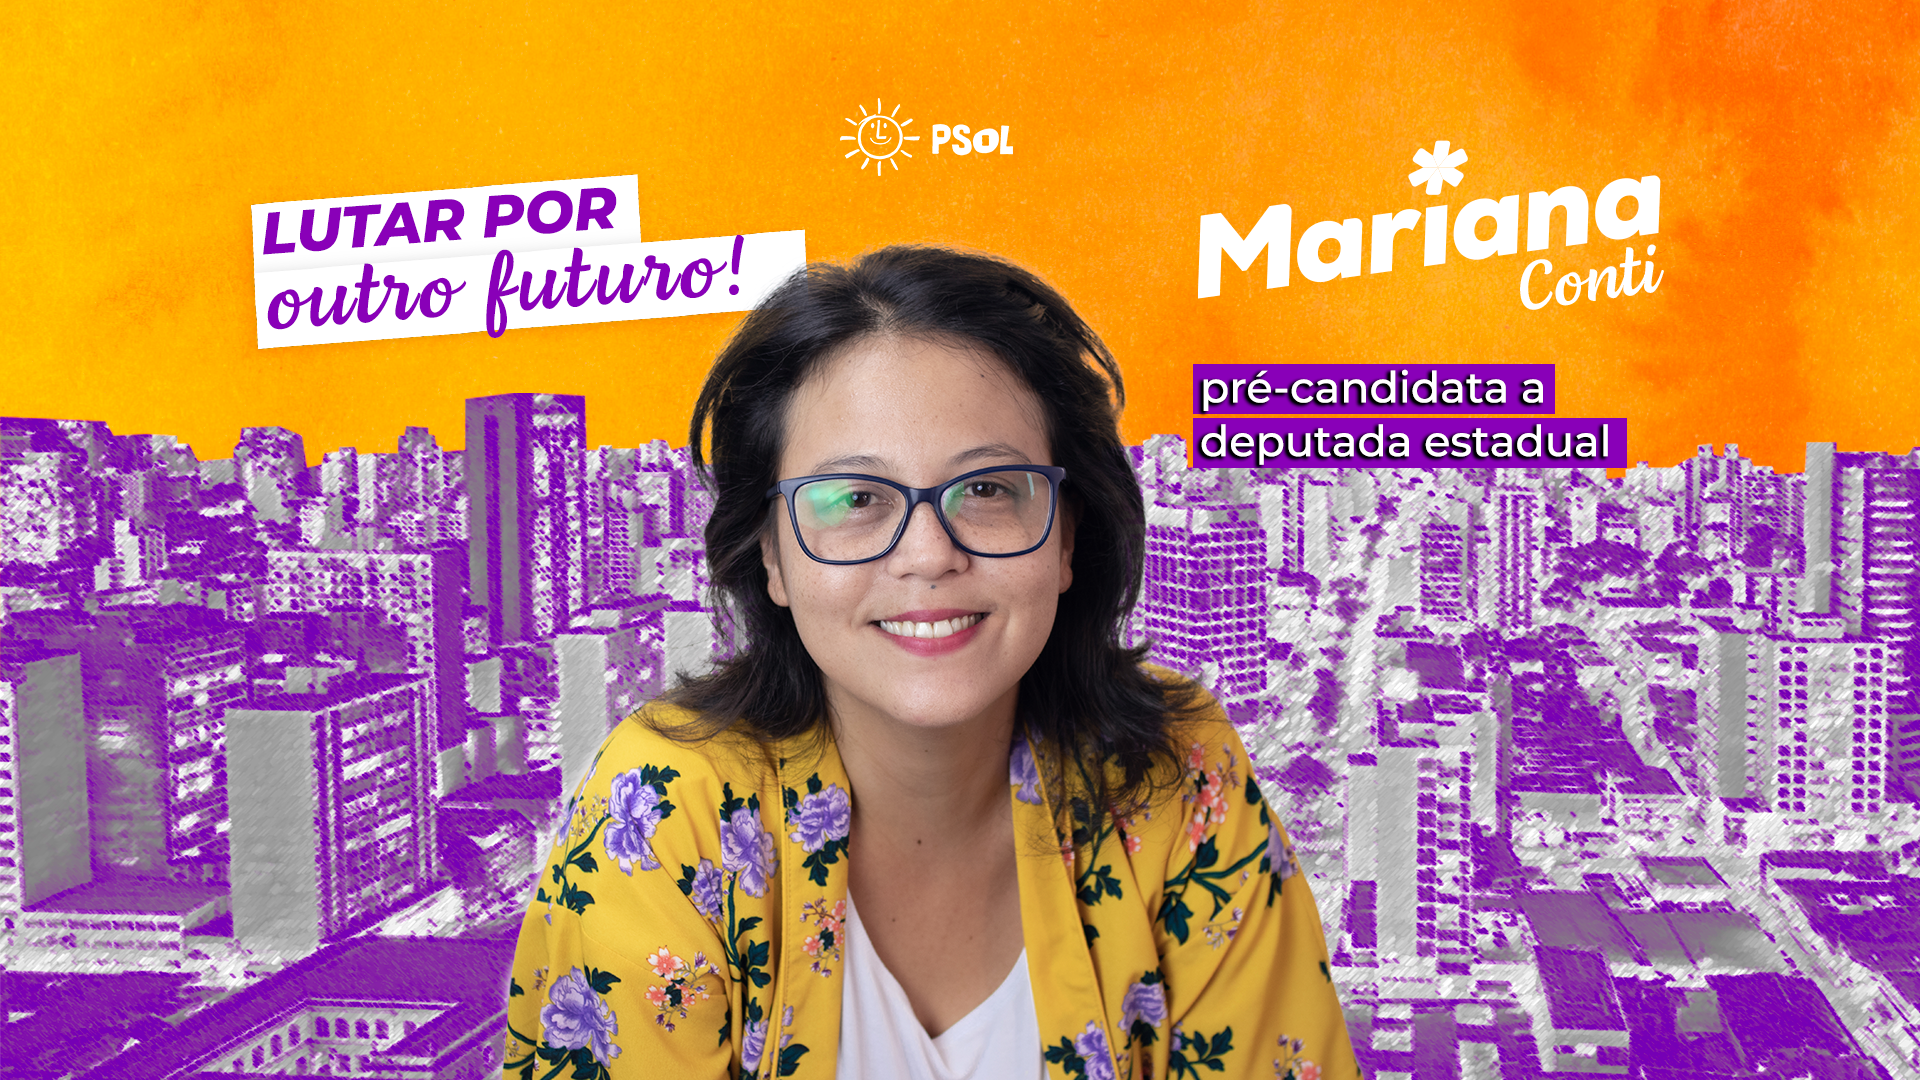 Manifesto da pré-candidatura da Mariana para deputada estadual pelo PSOL – Lutar por Outro Futuro!